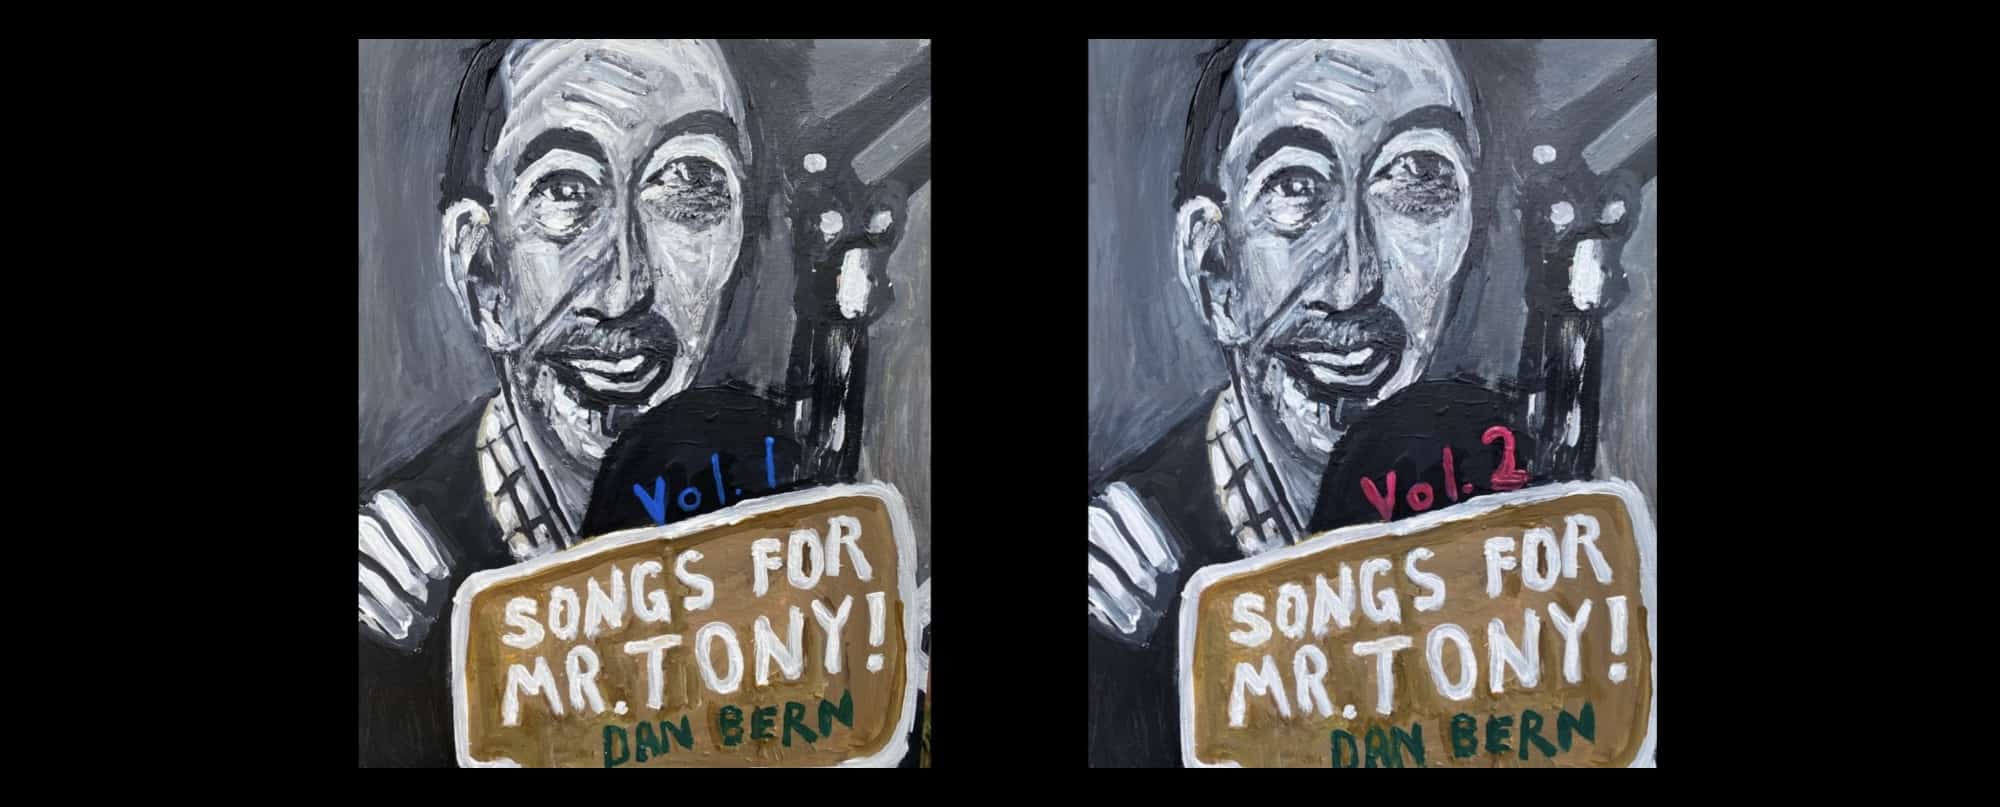 Dan Bern Songs for Mr. Tony!